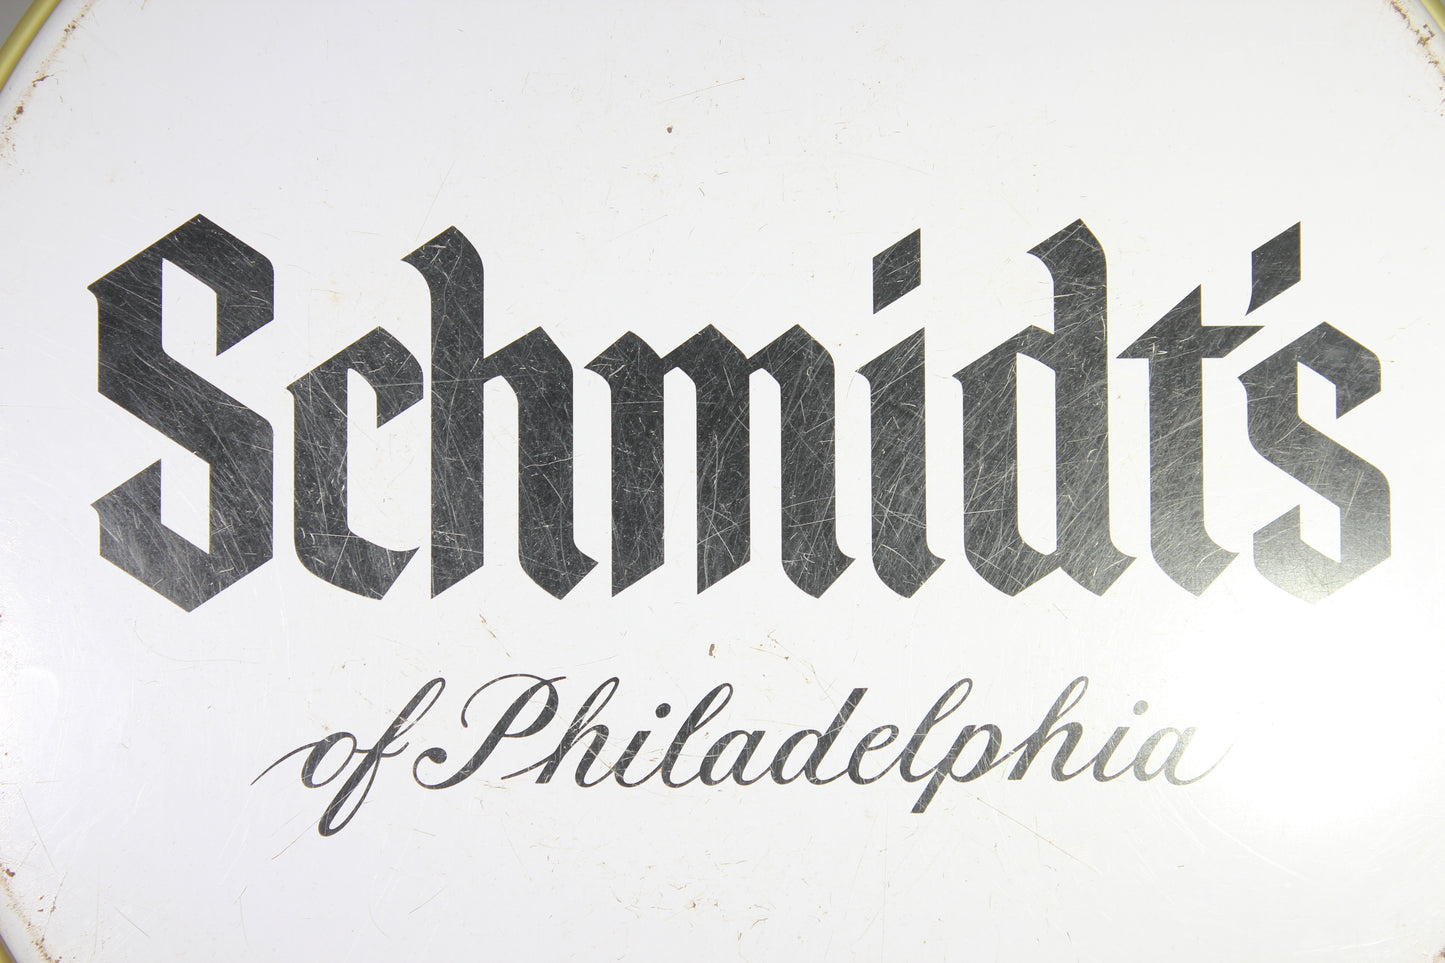 Schmidt's of Philadelphia Light Beer Metal Tray